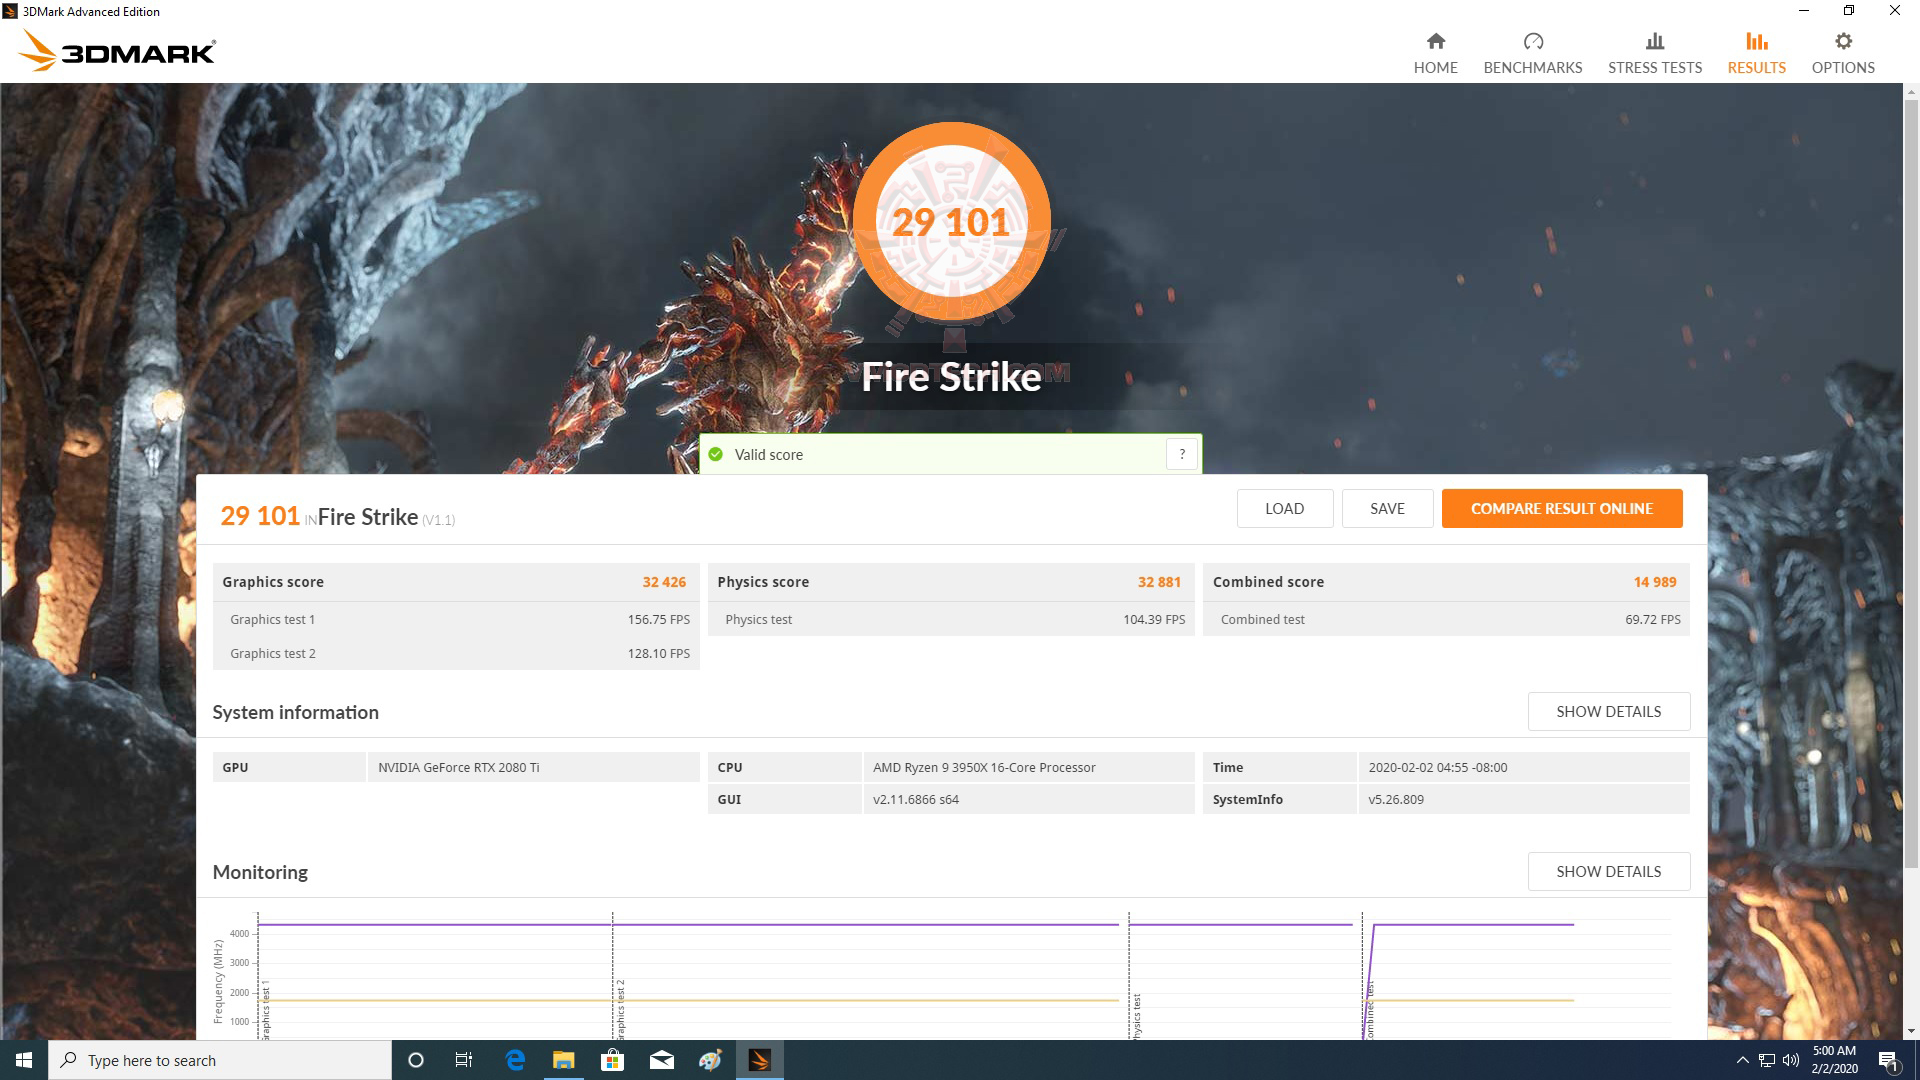 fire1 AMD RYZEN 9 3950X PROCESSOR REVIEW 